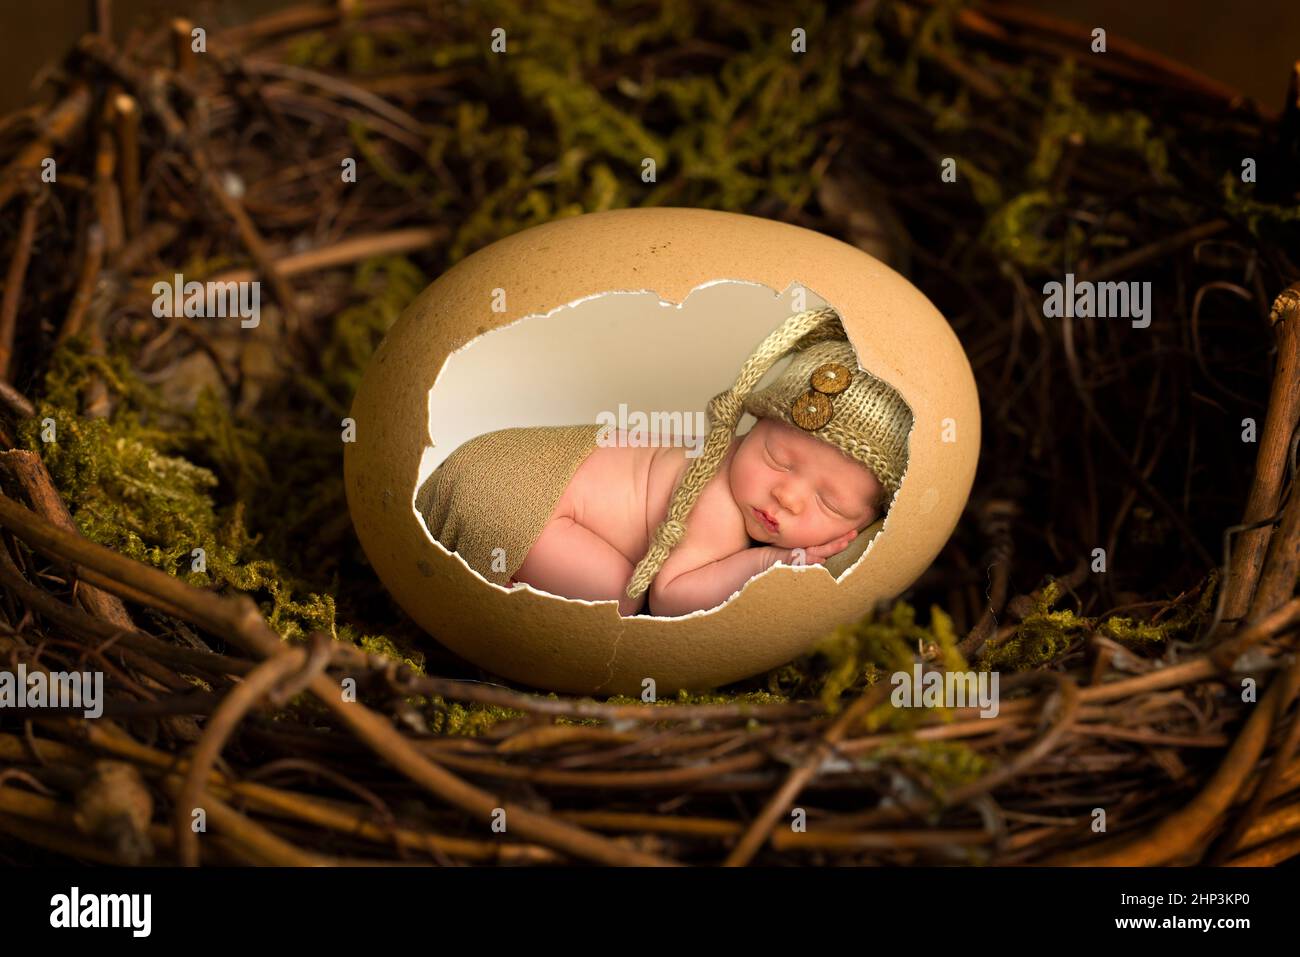 Entzückender kleiner neugeborener Junge von nur 11 Tagen, der in einem offenen braunen Hühnerei schläft Stockfoto